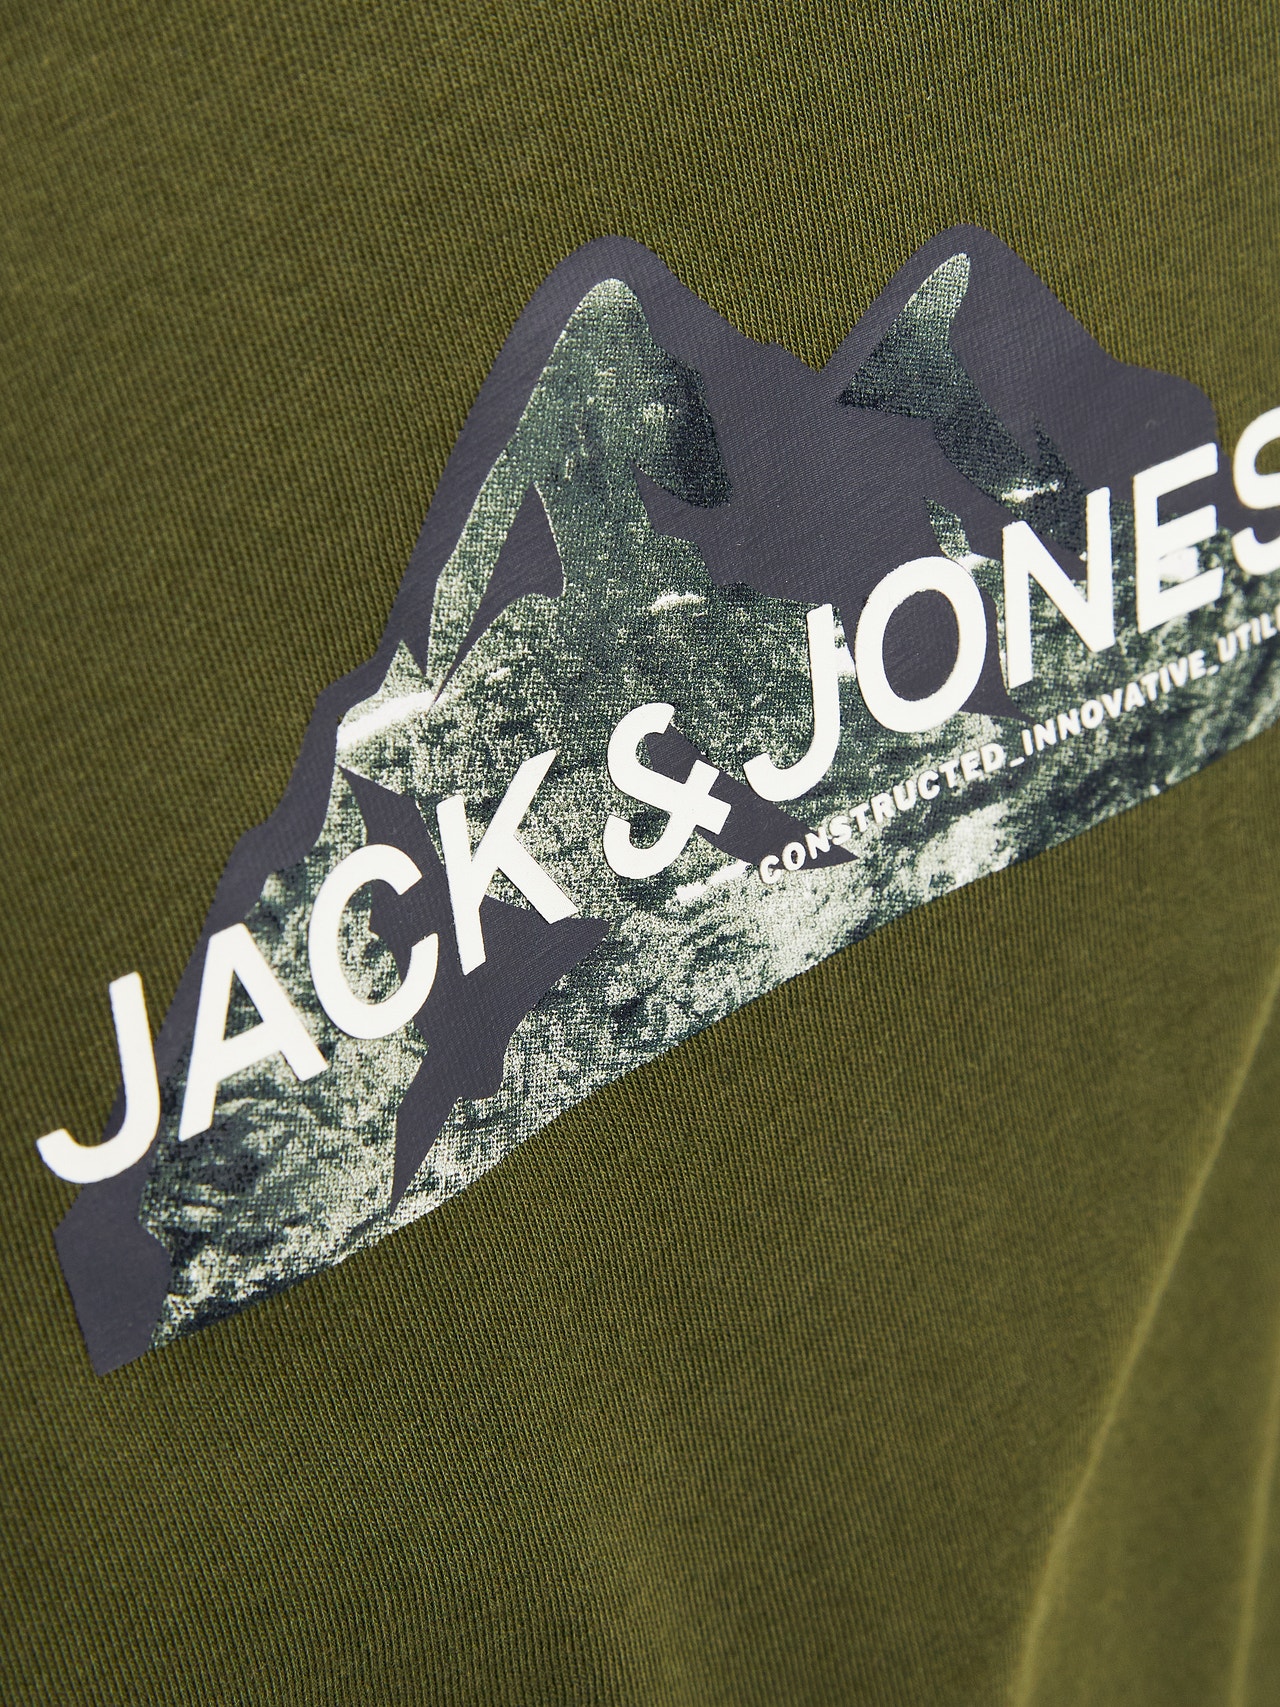 Jack & Jones Logotipas Marškinėliai Mini -Cypress - 12263388